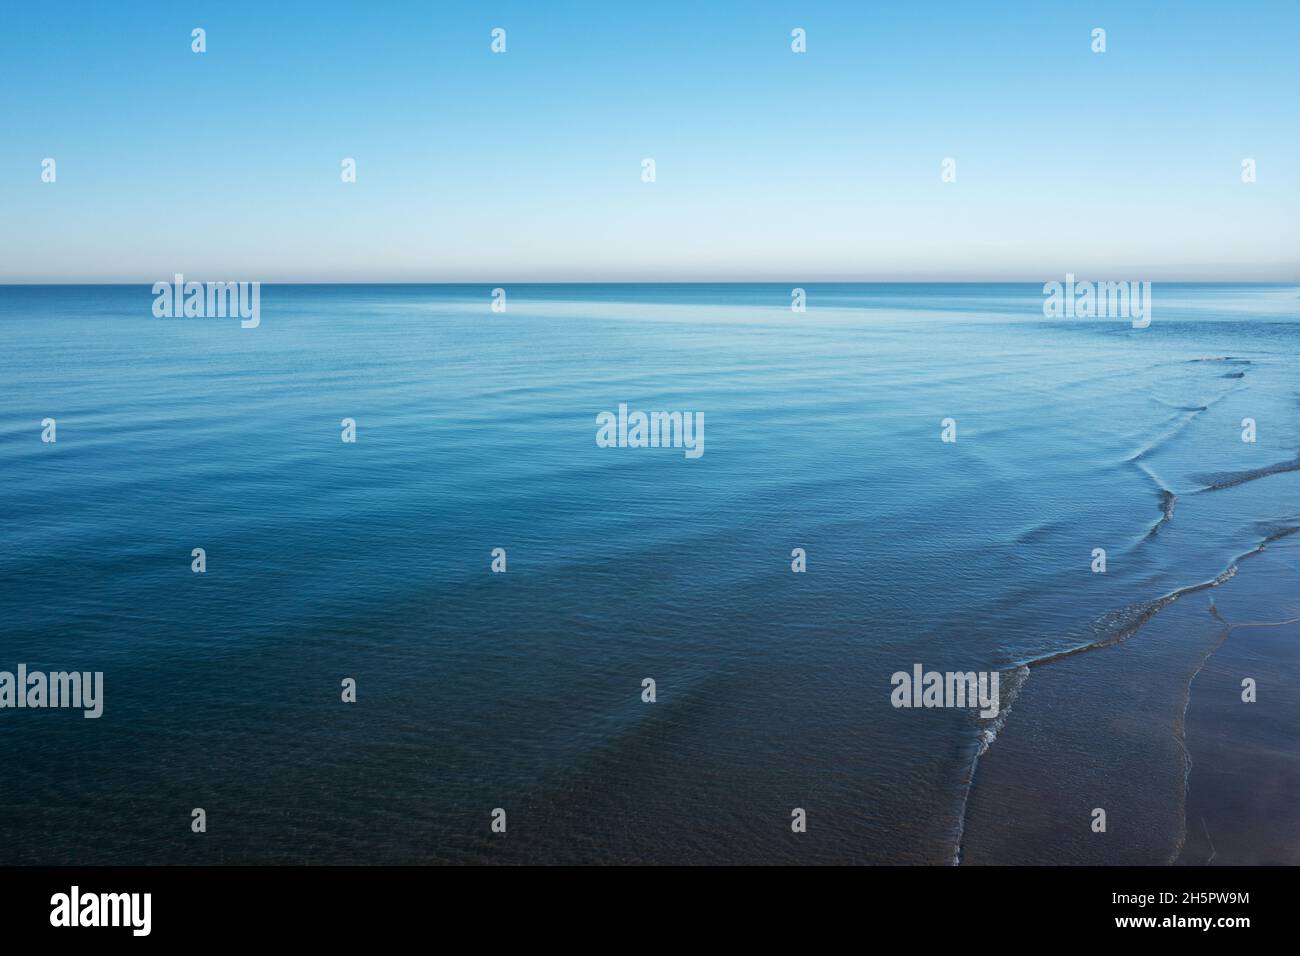 Primo piano superficie di mare calmo blu oceano acqua di mare con cielo aperto alla luce del giorno. Trama sfondo astratta. Foto di alta qualità Foto Stock